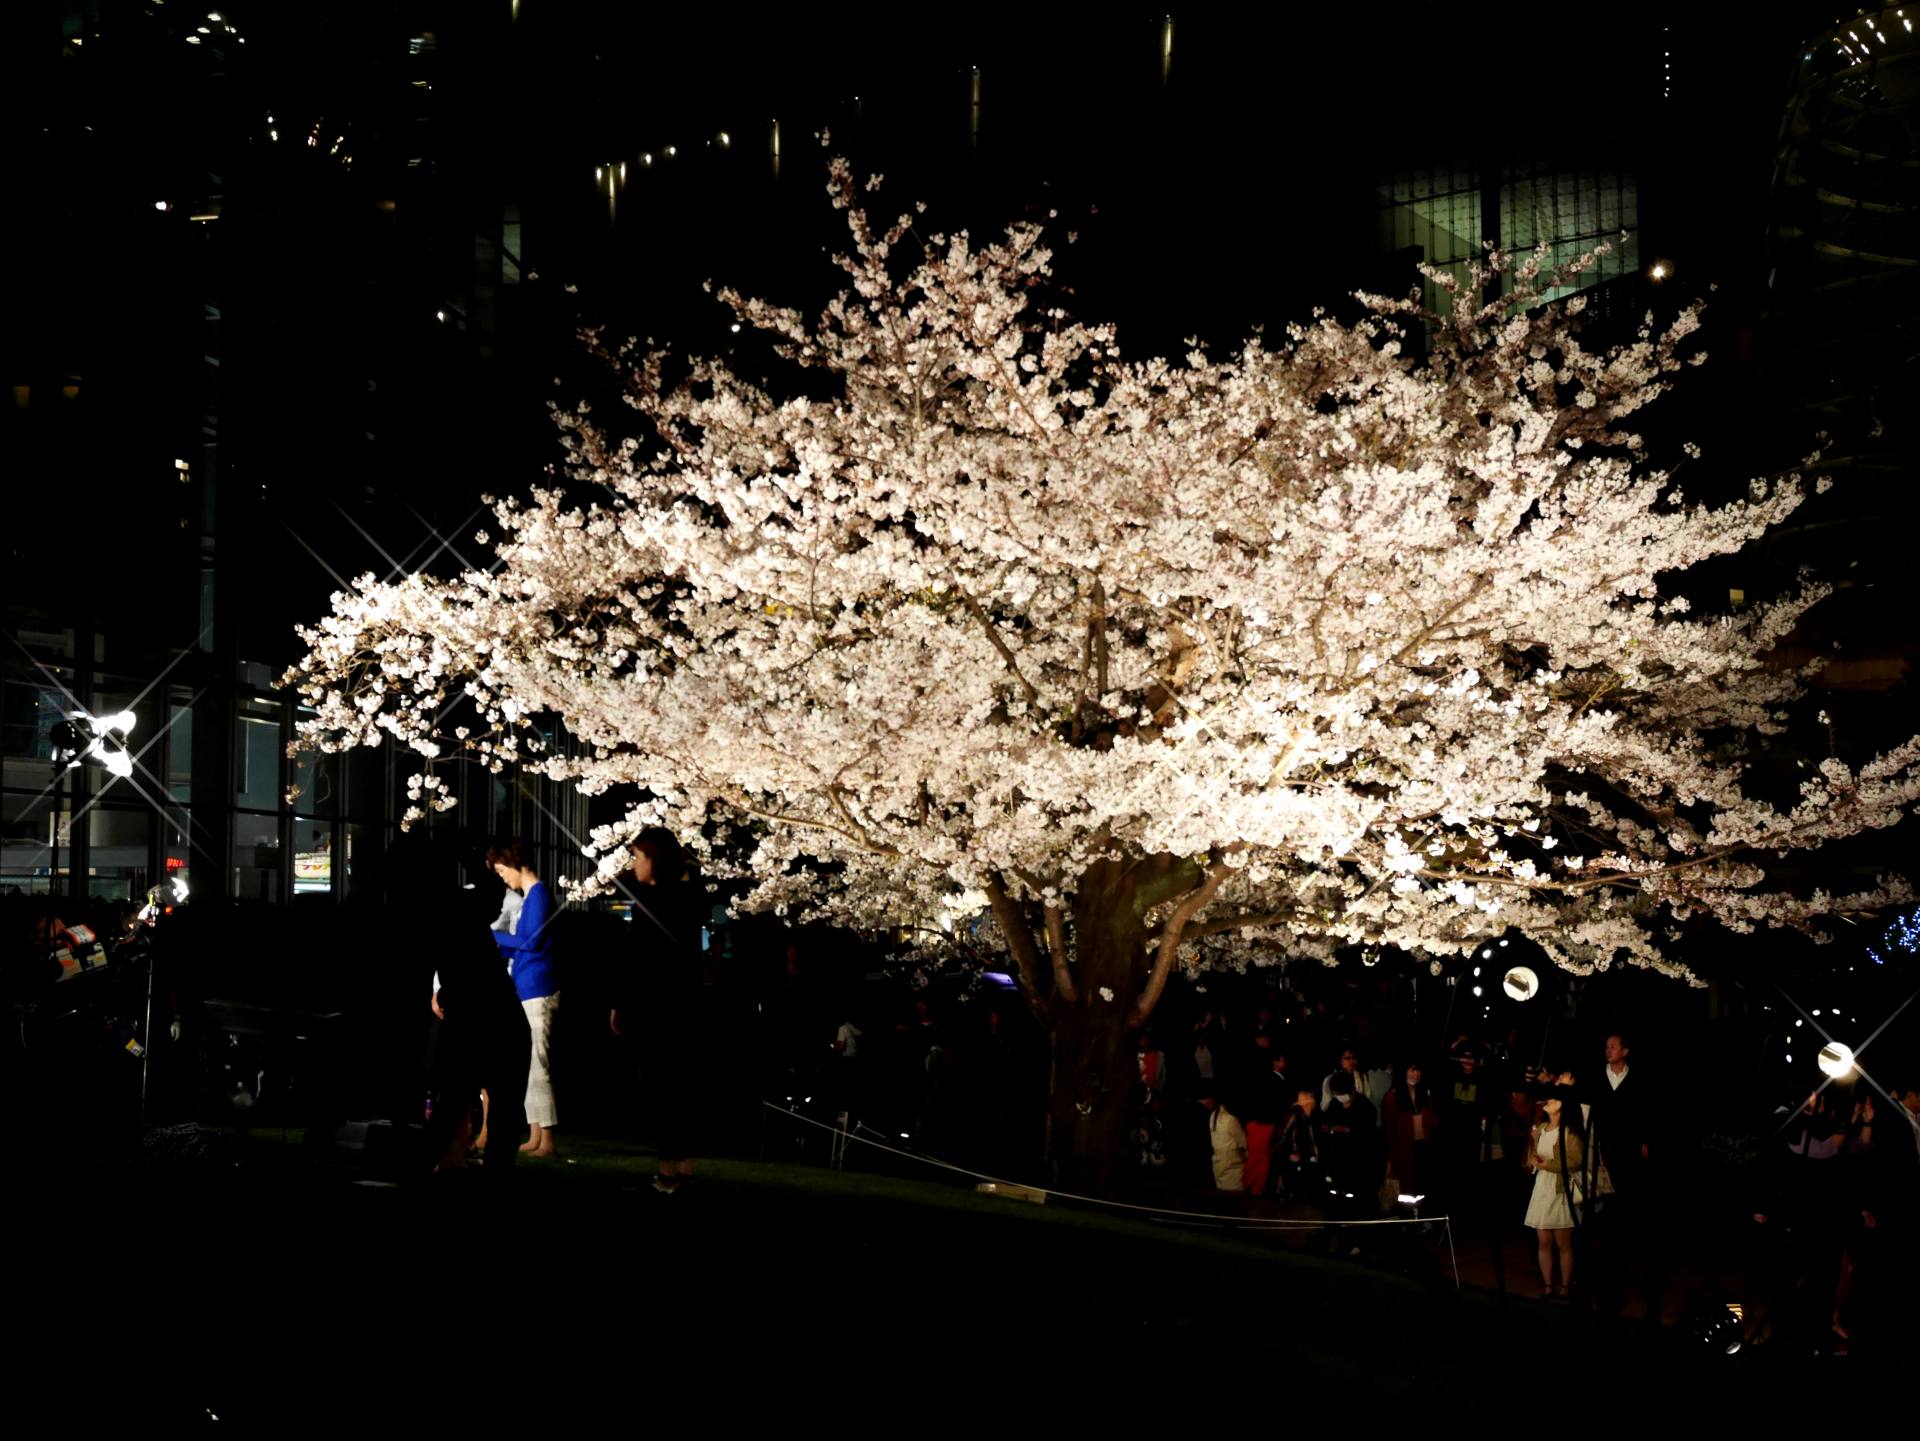 東京六本木賞櫻 毛利庭園與森大樓 白天 夜晚的櫻花美景大比拚 好運日本行